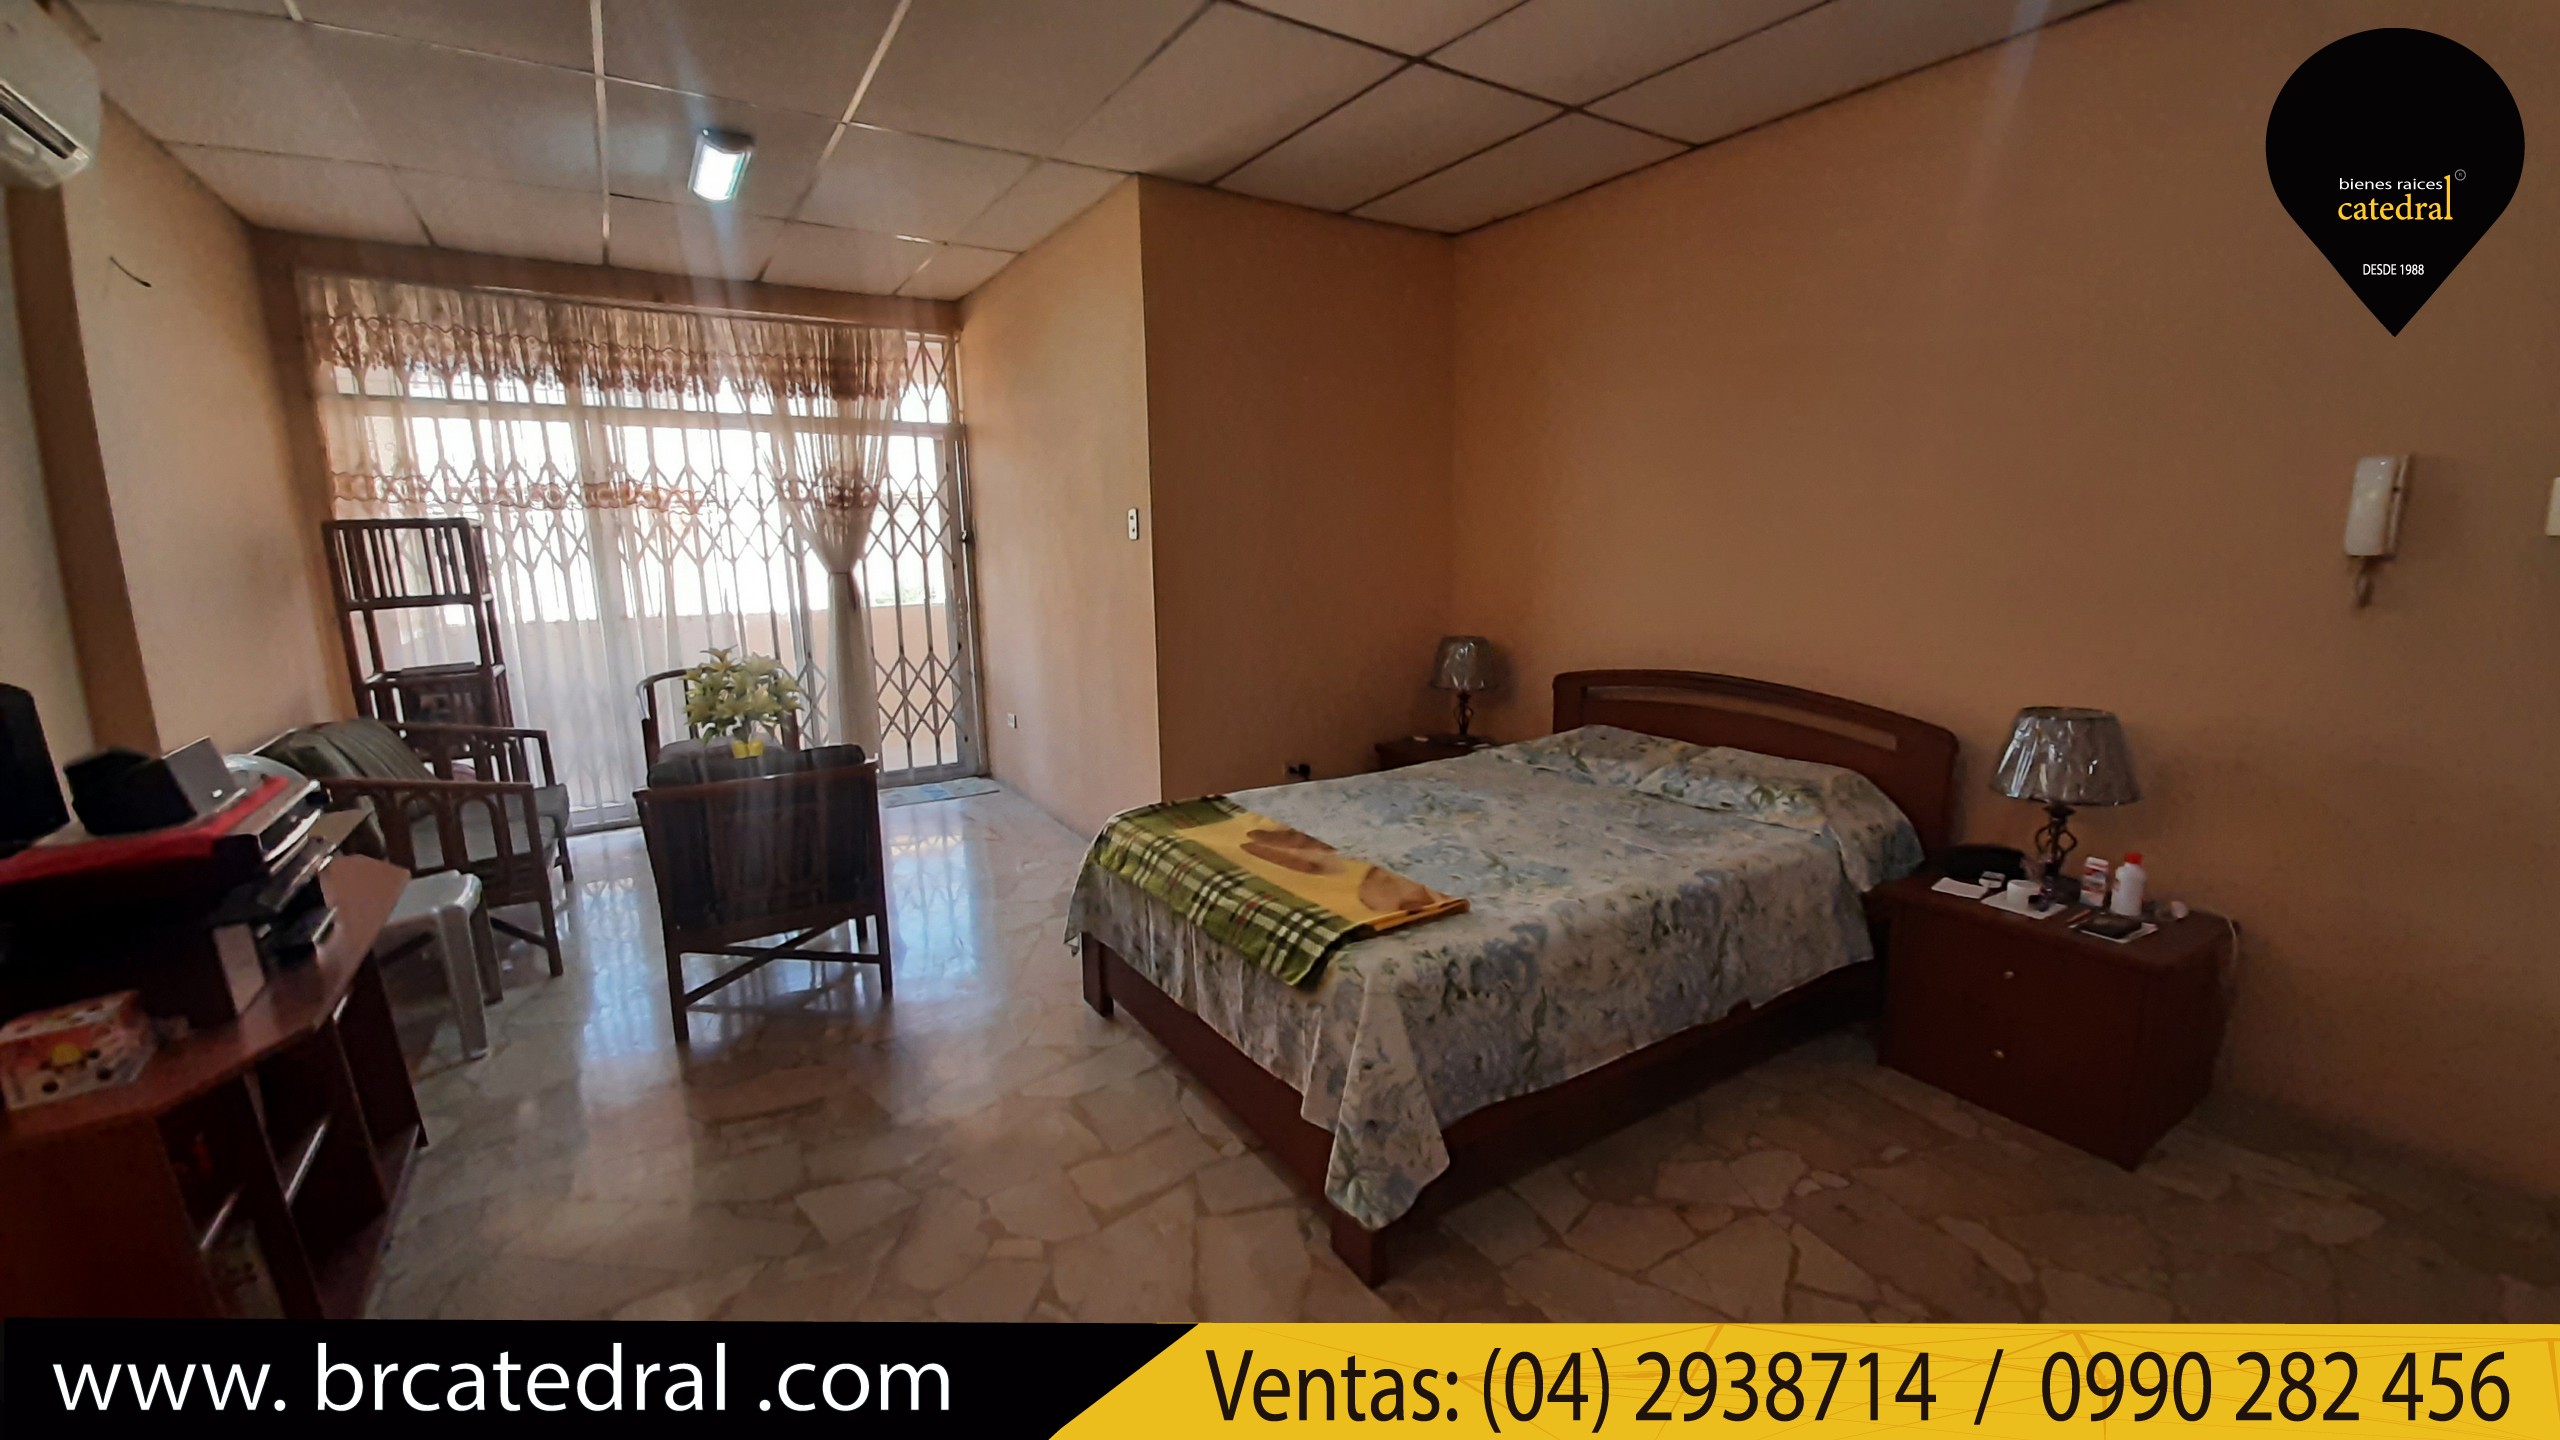 Villa Casa de Venta en Guayaquil Ecuador sector Garzota - Sector Coop. Jep